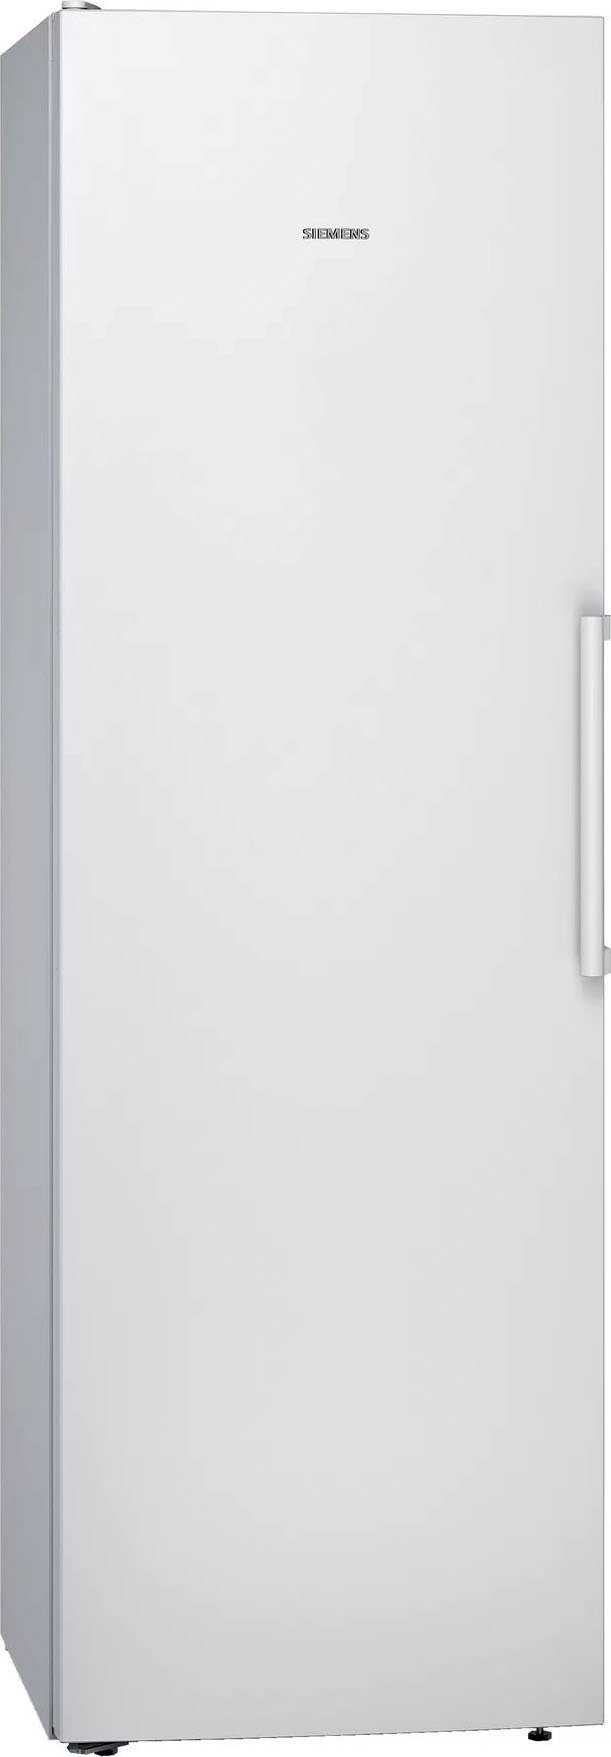 SIEMENS Kühlschrank cm breit weiß iQ300 cm hoch, KS36VVWEP, 60 186